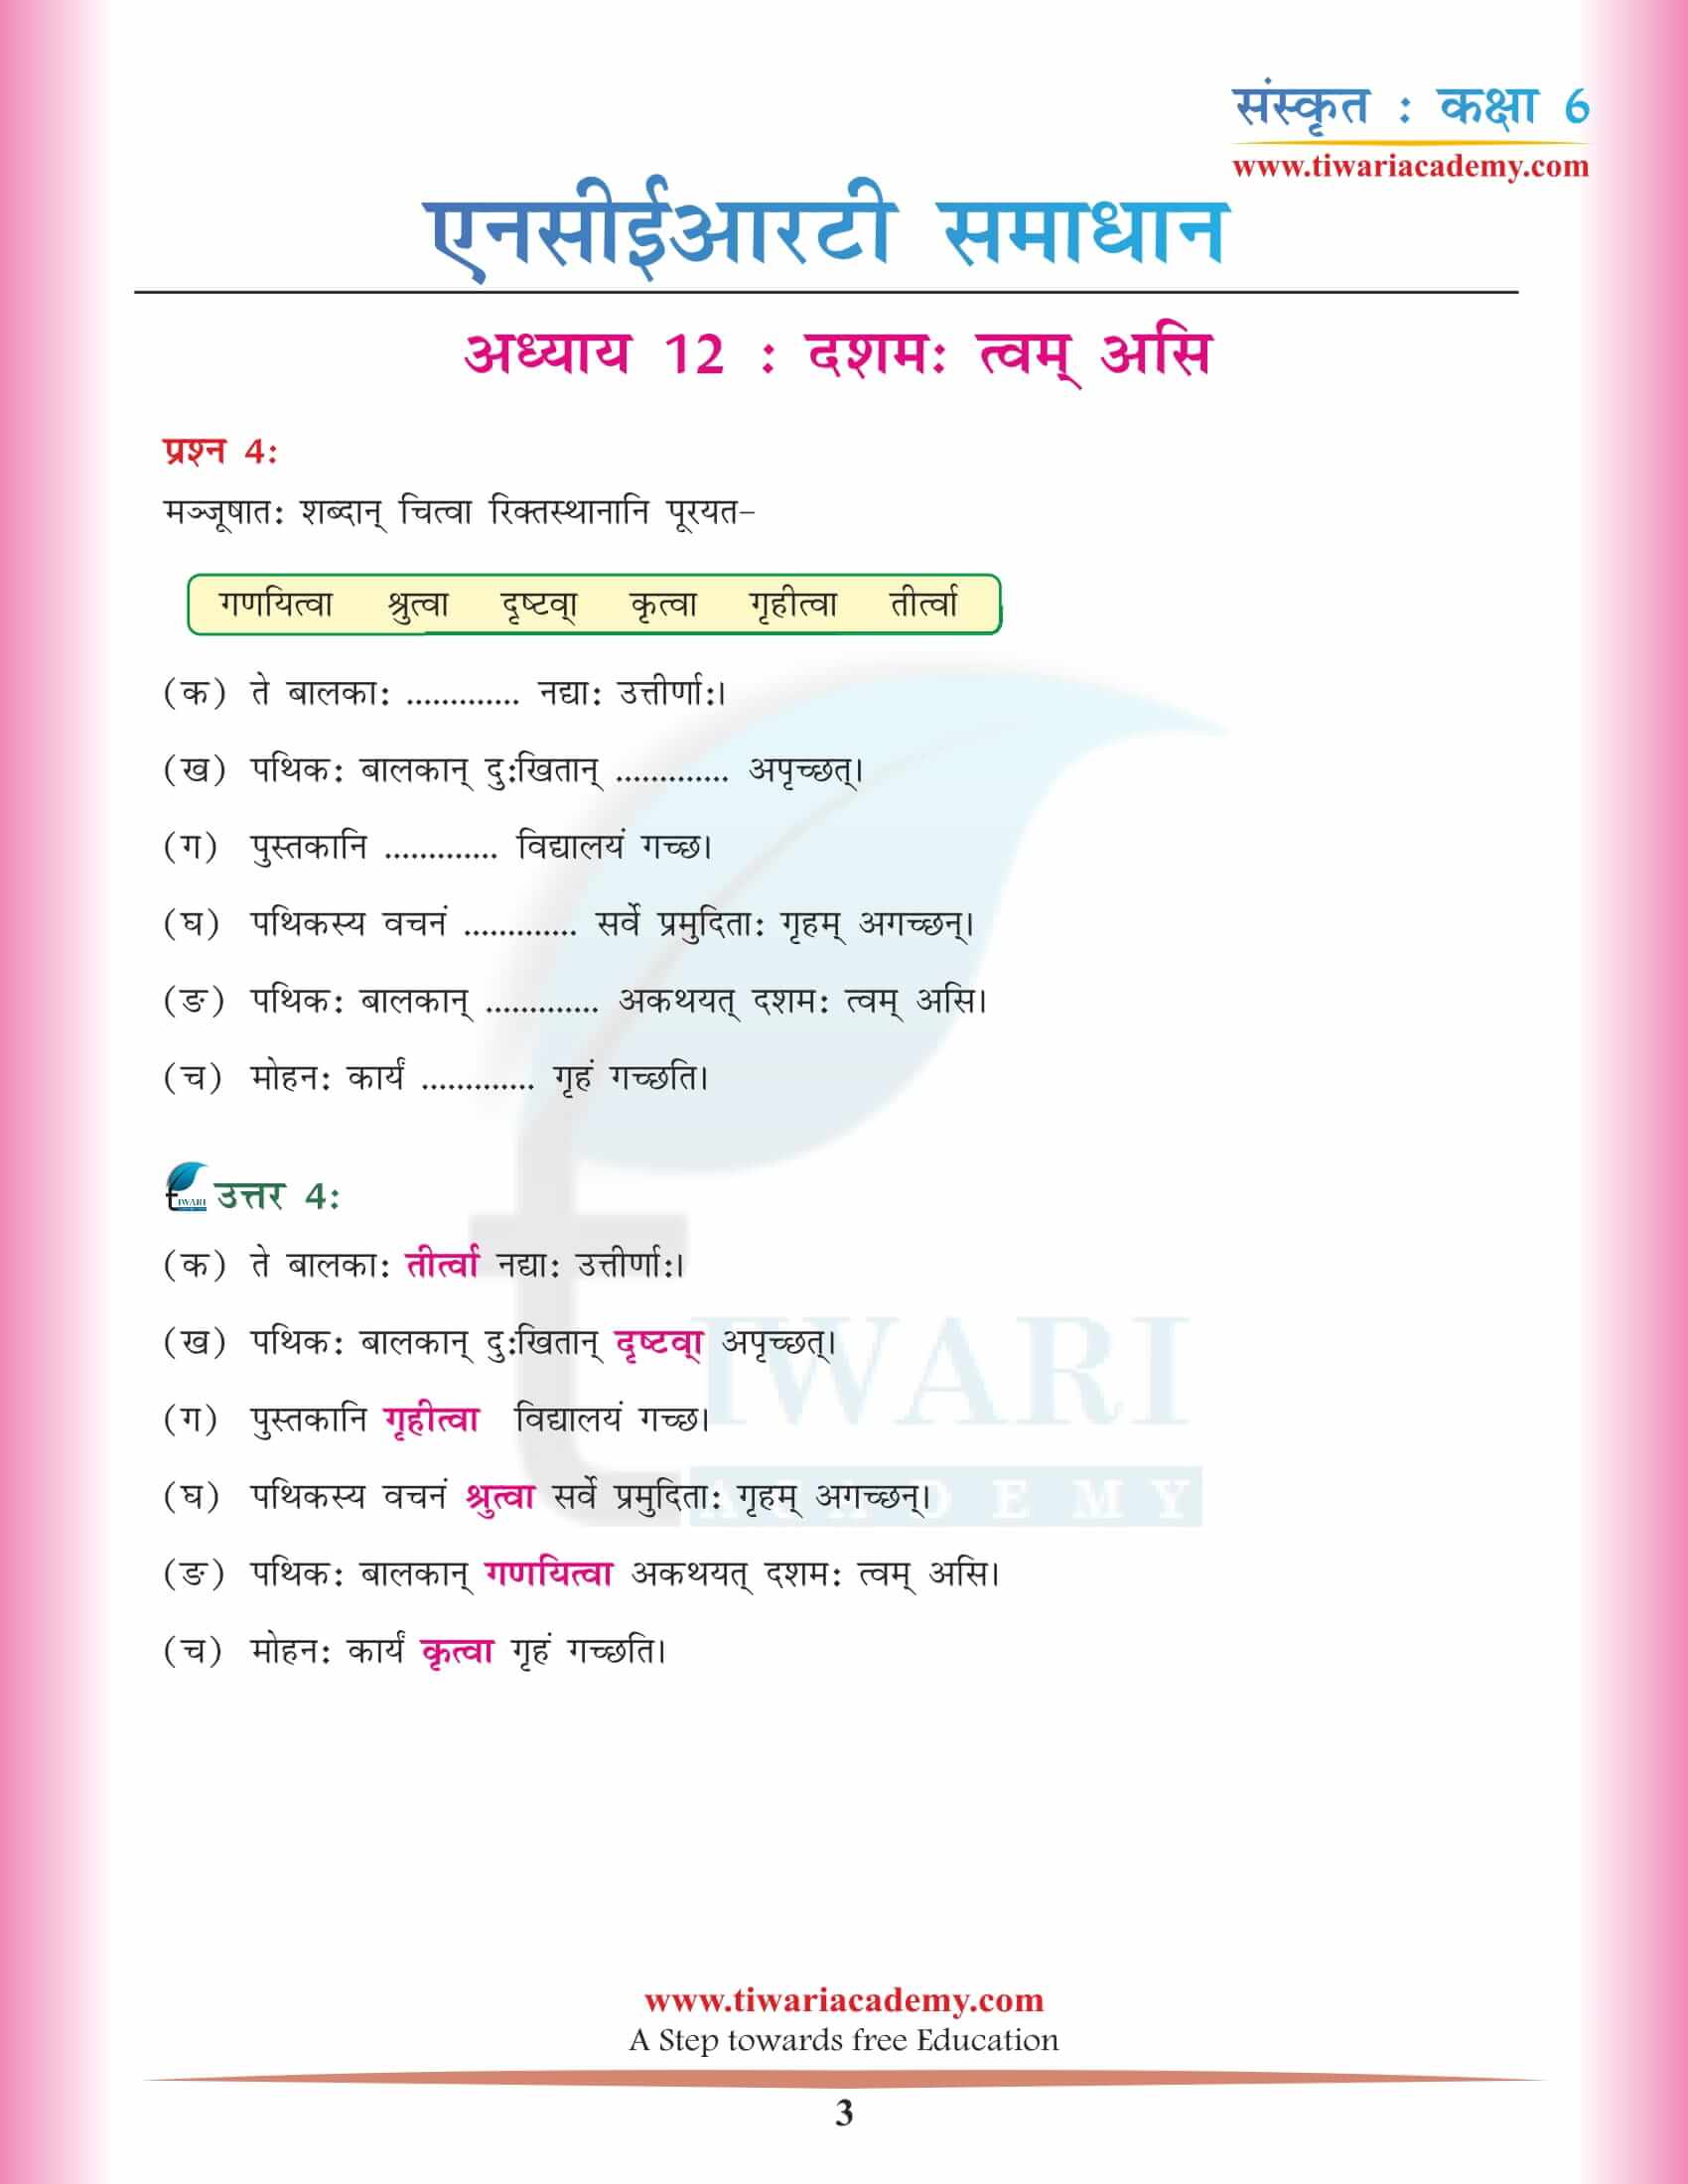 एनसीईआरटी समाधान कक्षा 6 संस्कृत अध्याय 12 हिंदी में